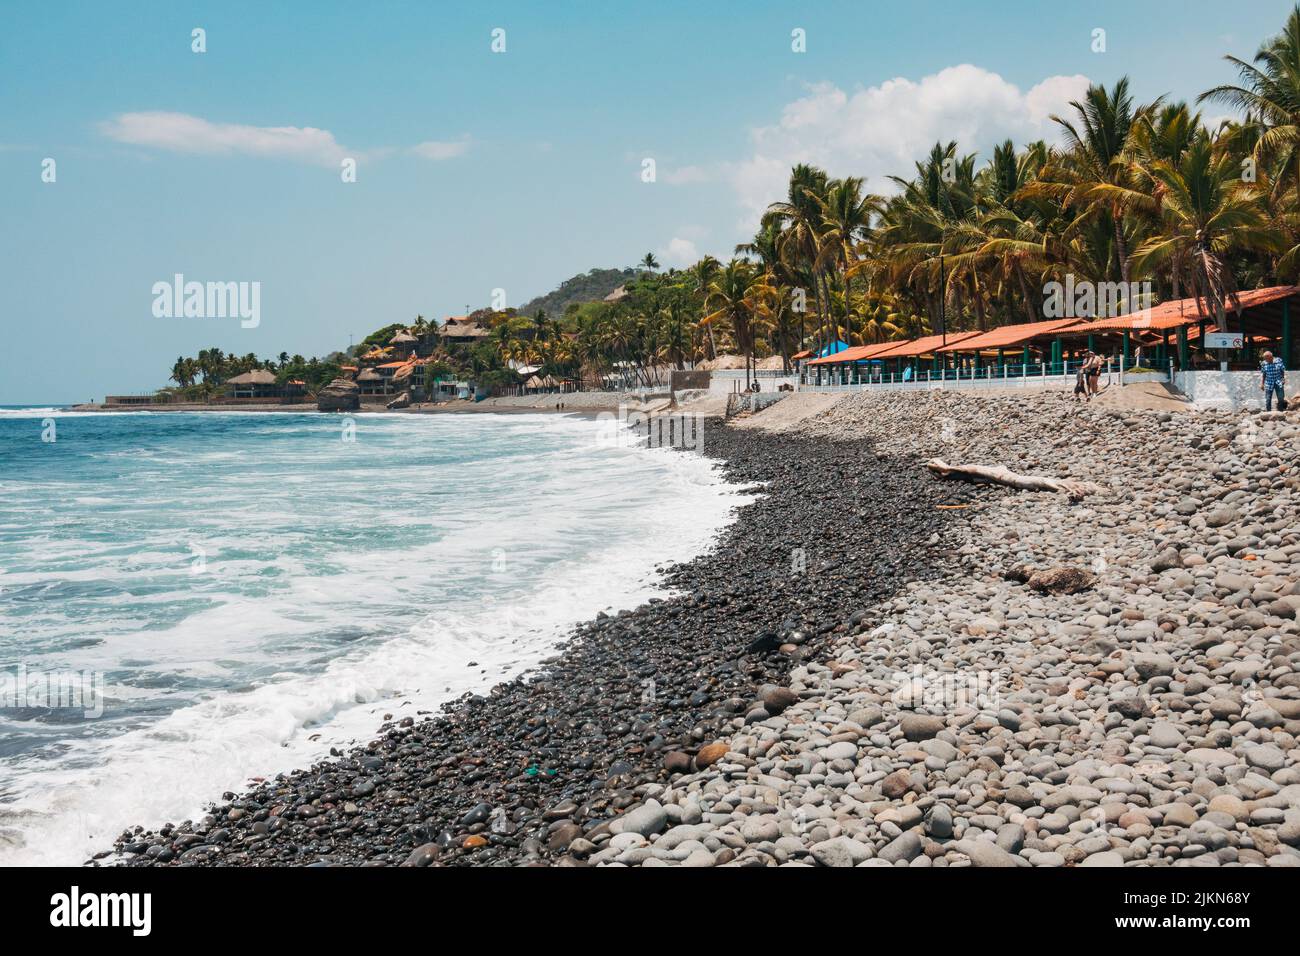 Las costas rocosas de la playa de El Tunco en la costa pacífica de El Salvador Foto de stock